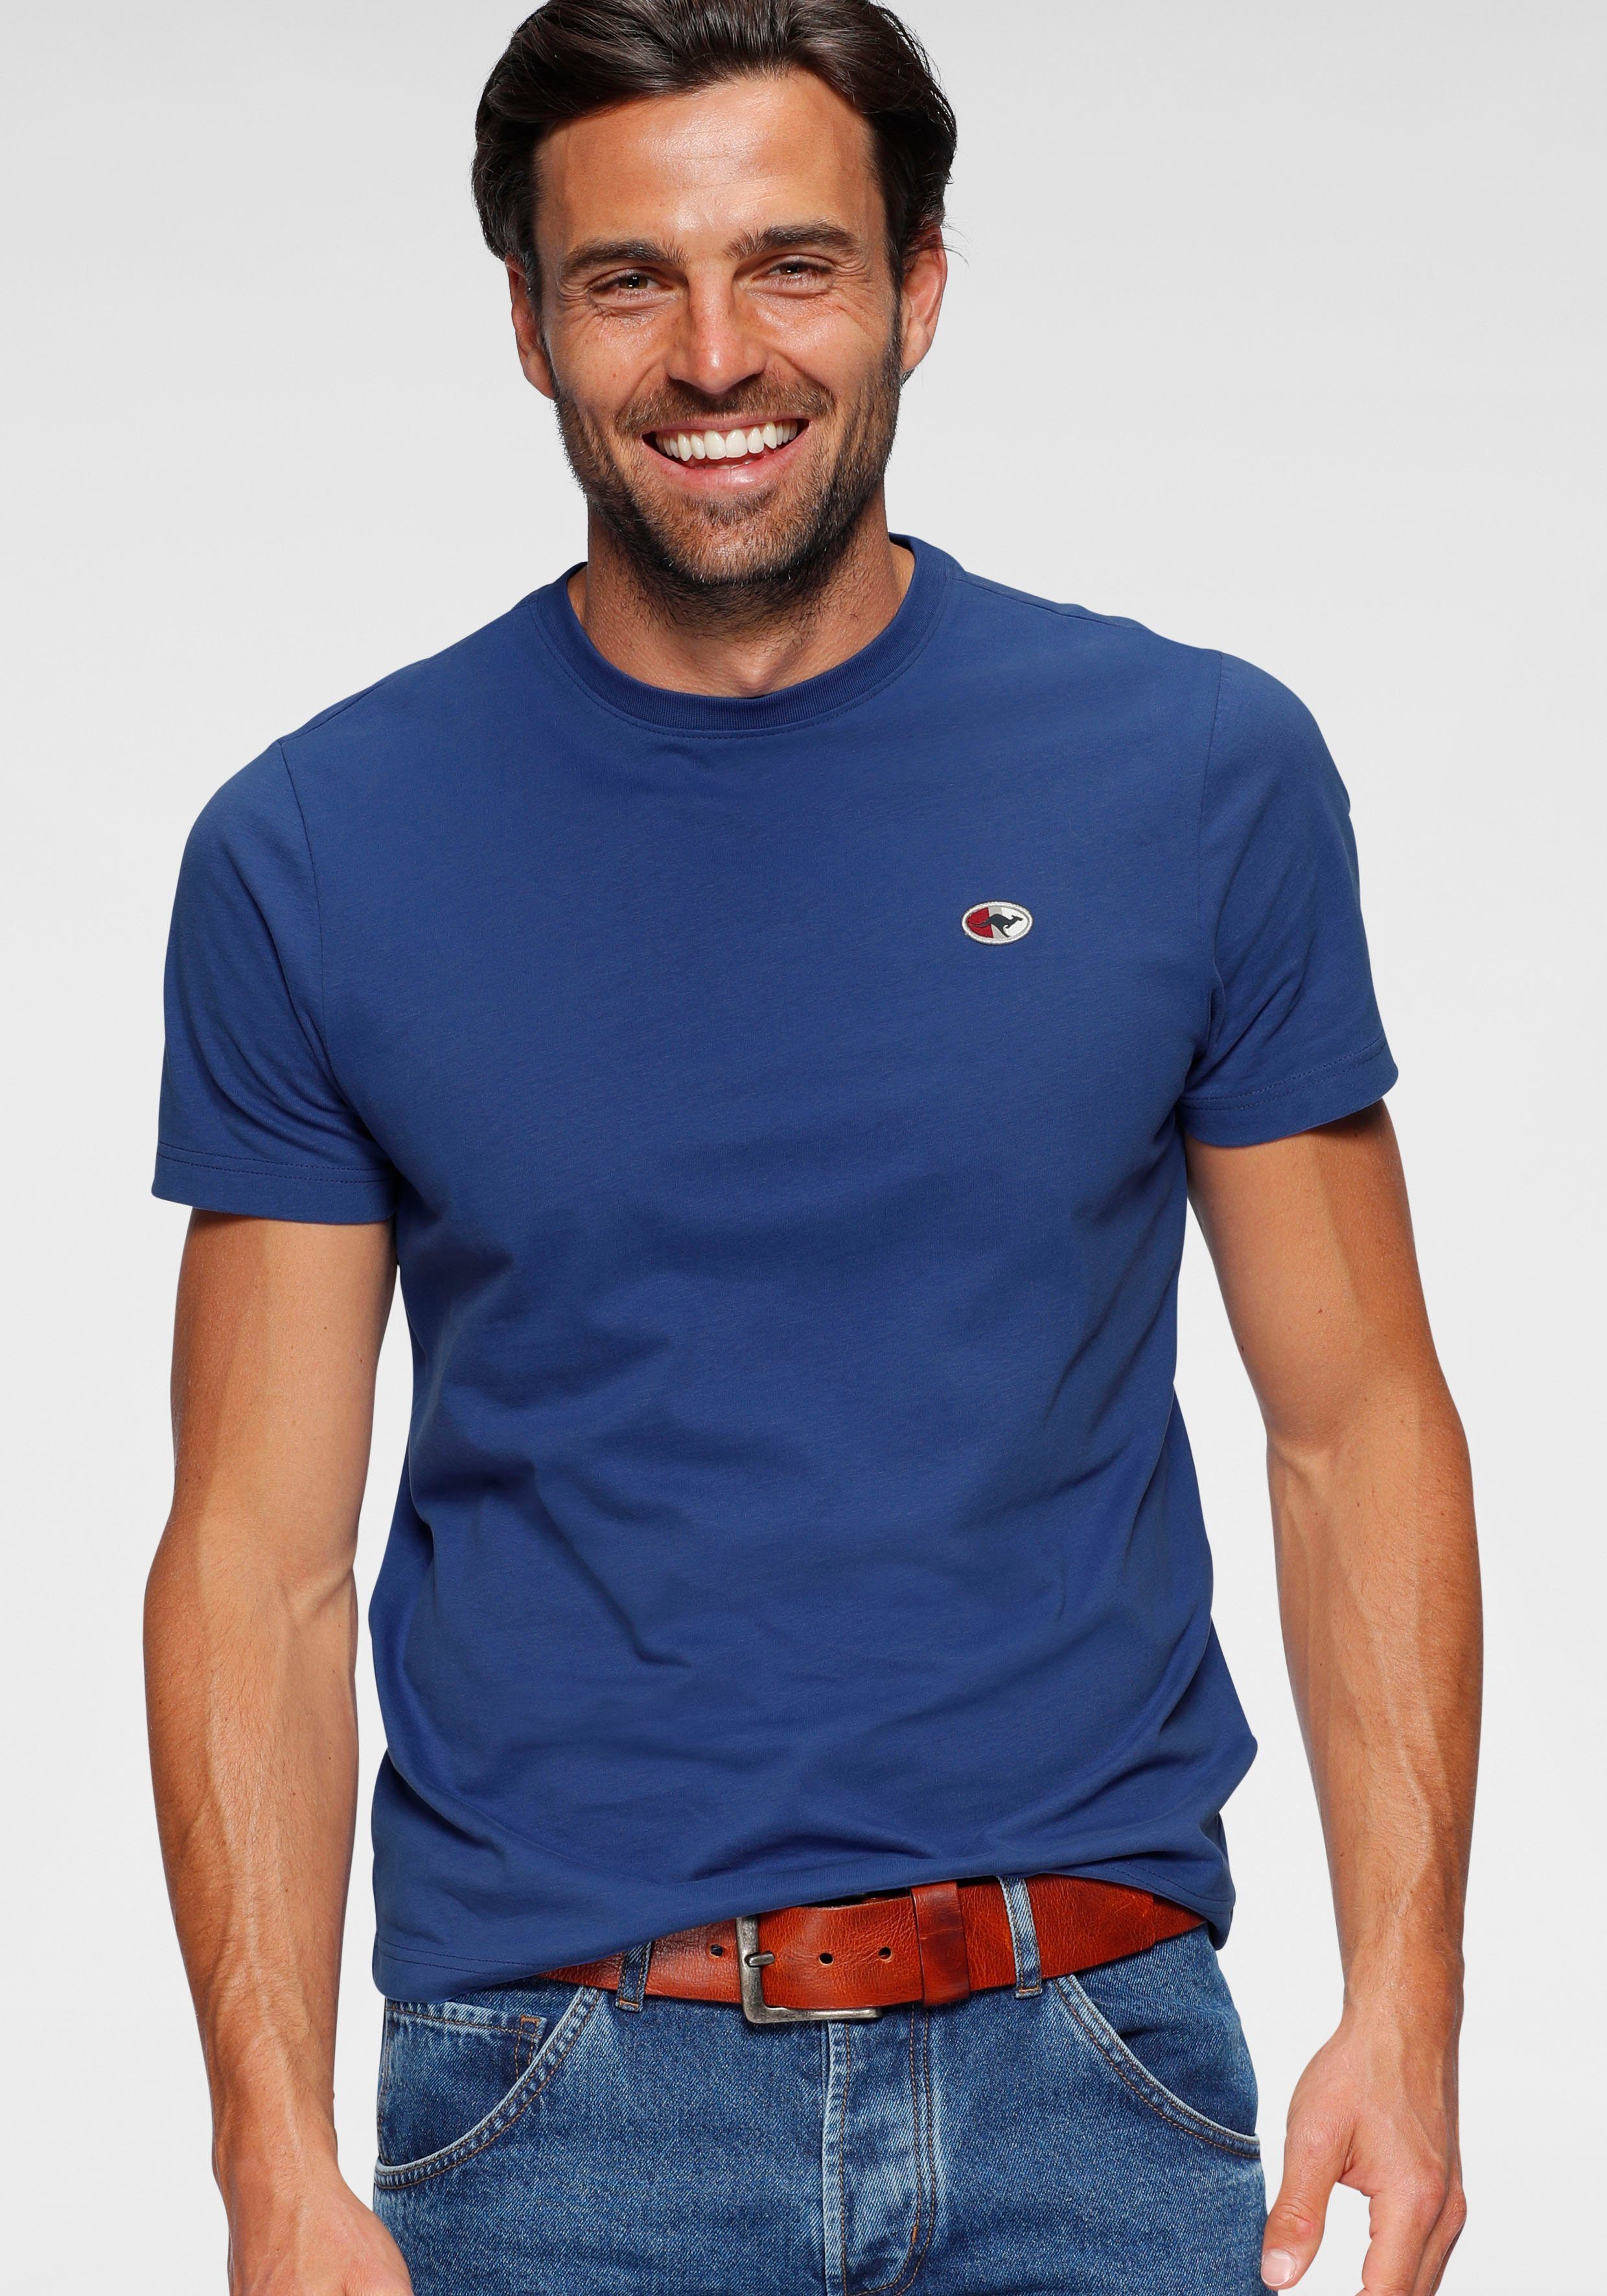 KangaROOS T-Shirt unifarben royalblau